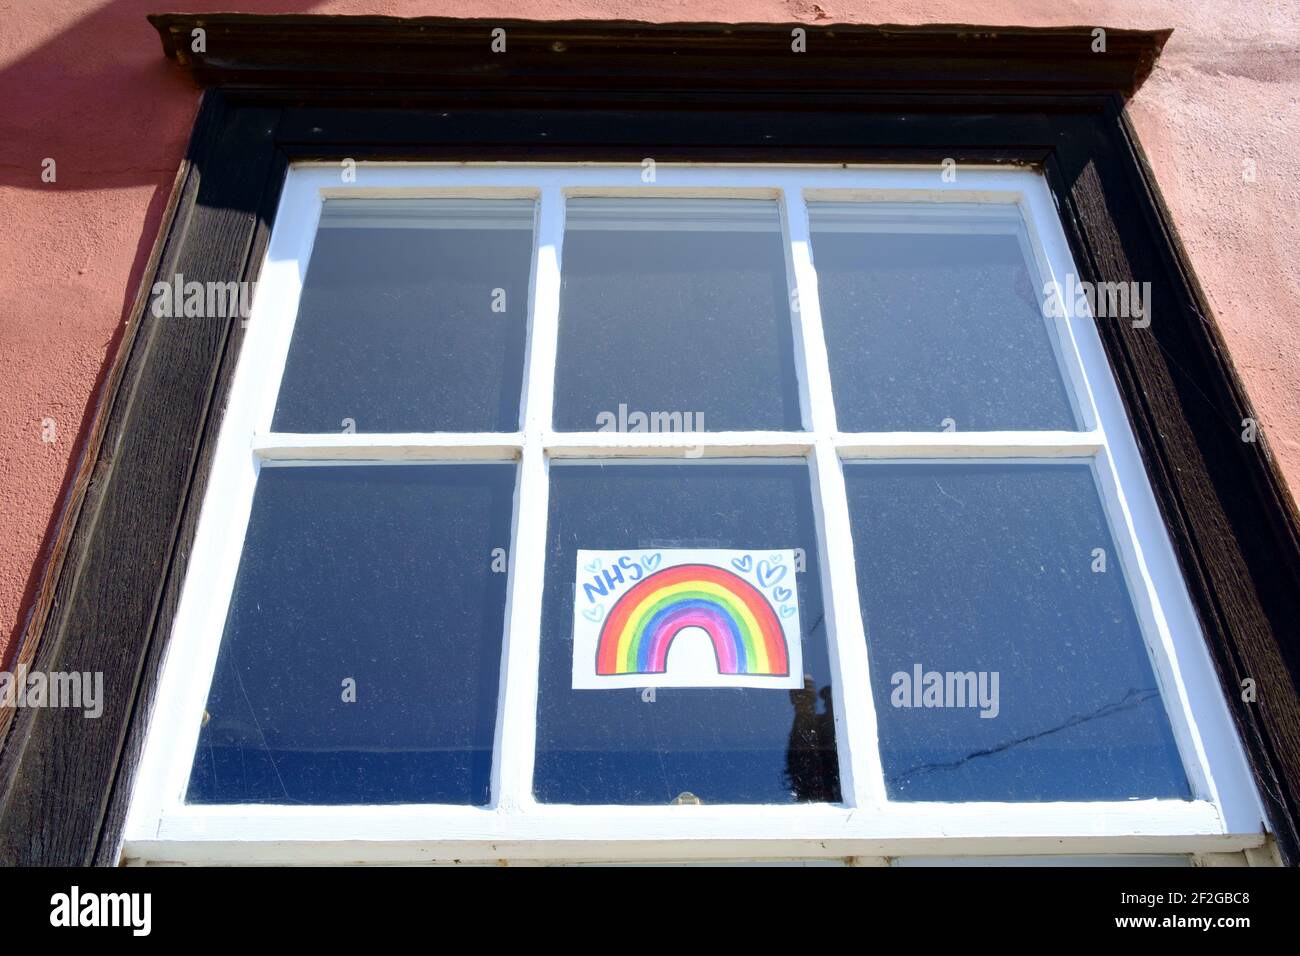 NHS Rainbows colocado en las ventanas para agradecer a la NHS durante La pandemia de Covid-19 Foto de stock